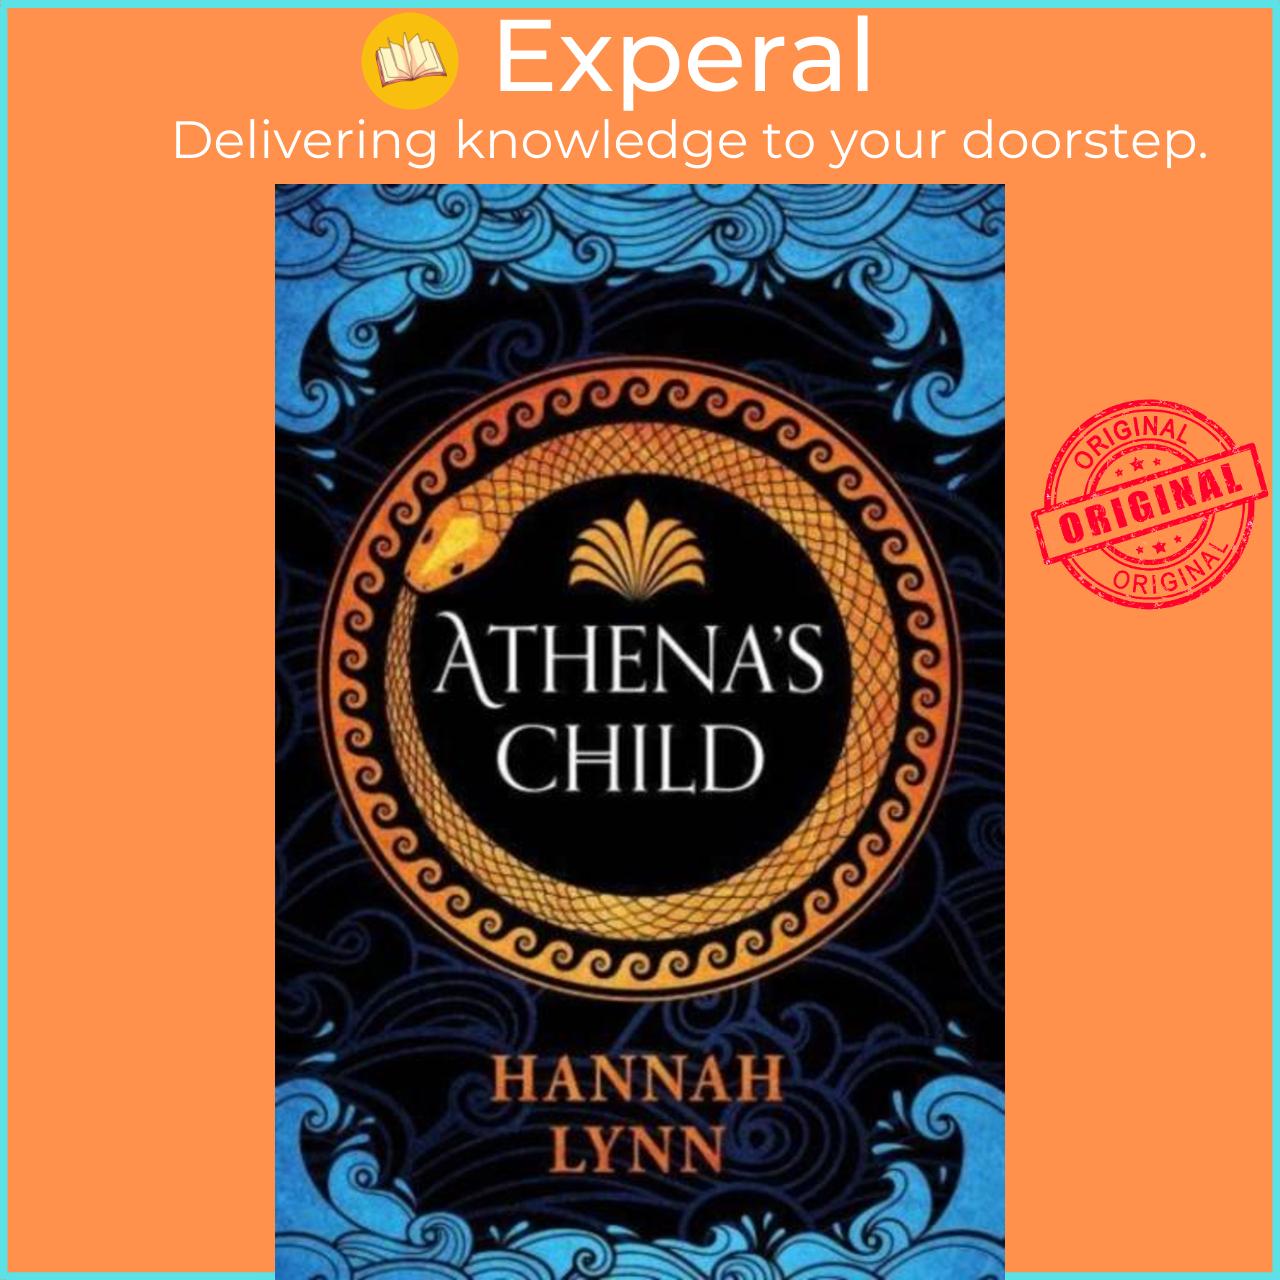 Sách - Athena's Child by Hannah Lynn (UK edition, paperback)